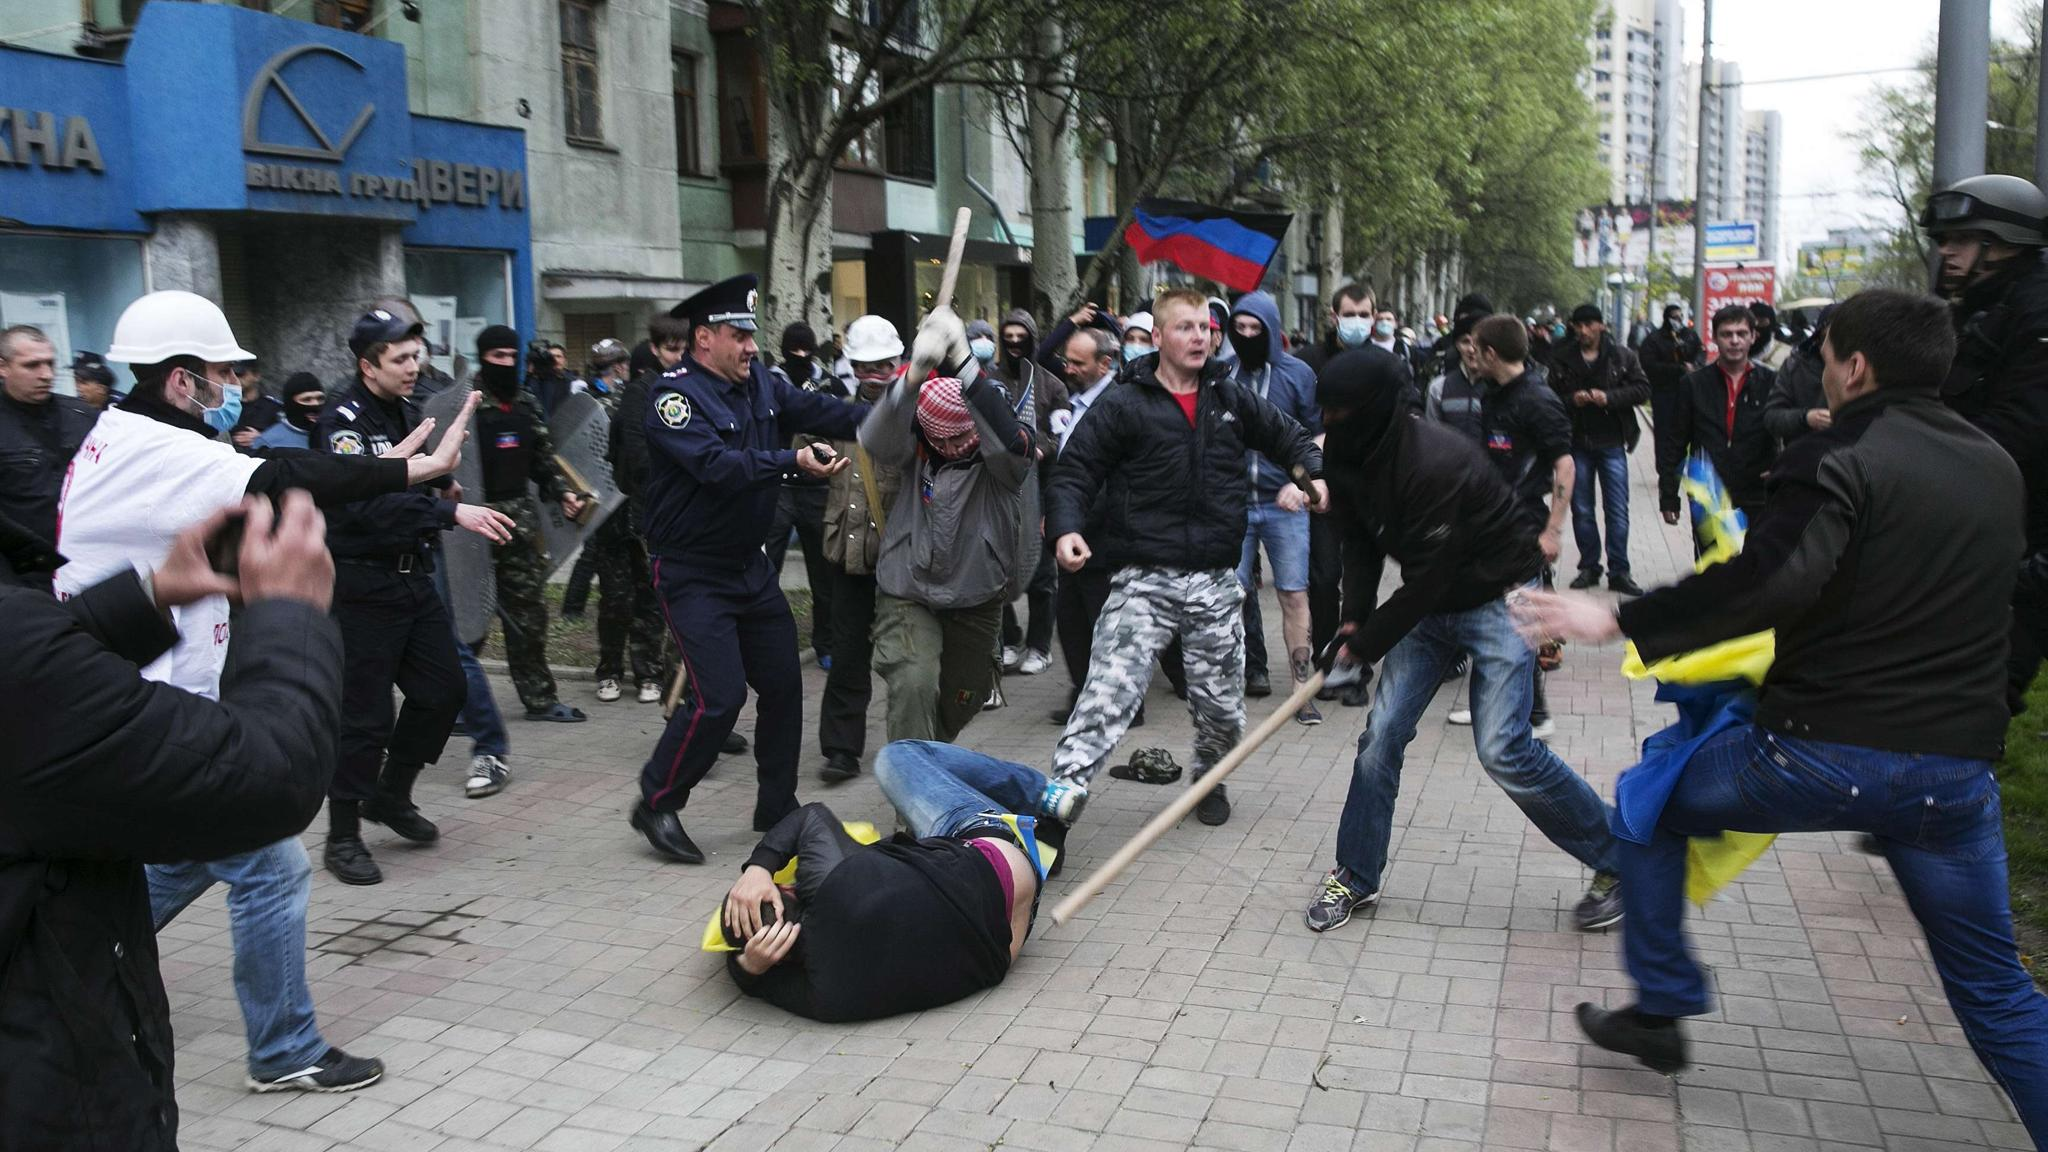 Бейте укропов. Русские побили украинца. Протестующие Киев 2014 год.